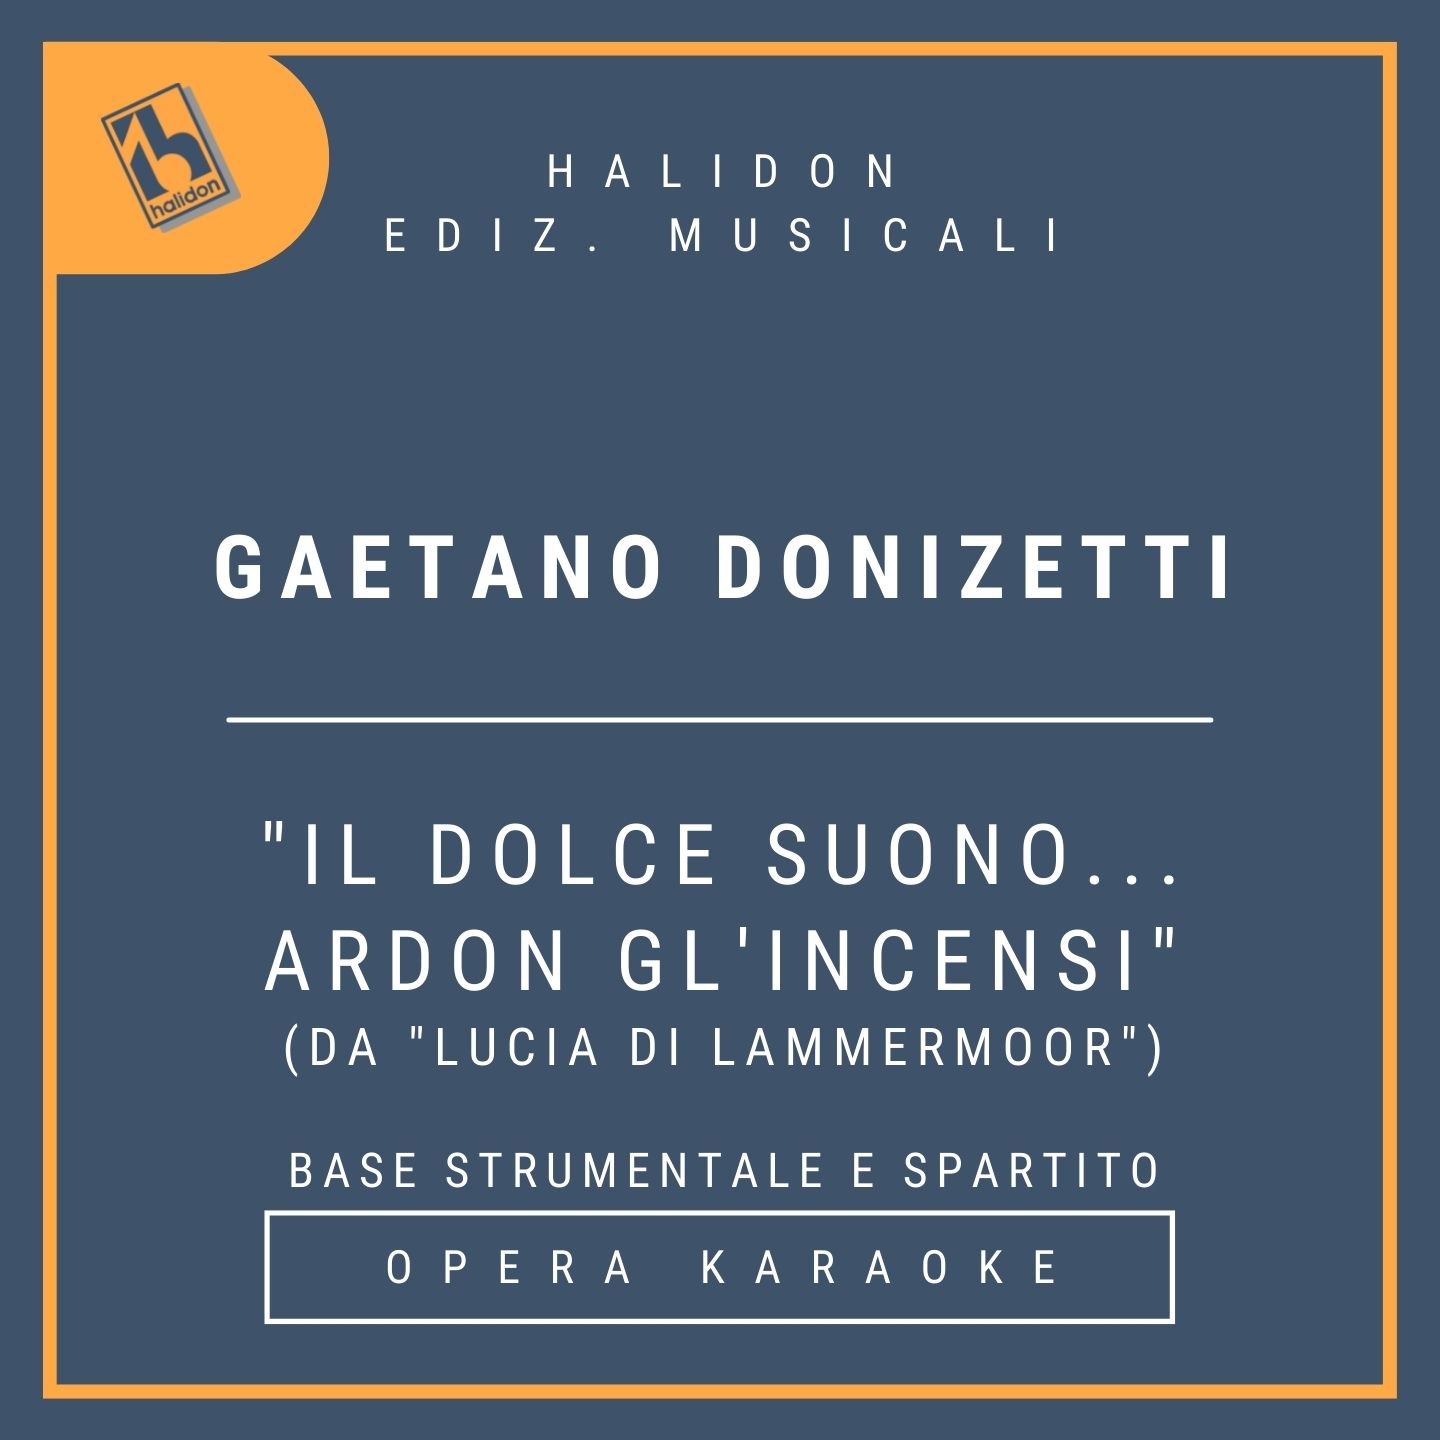 Gaetano Donizetti - Il dolce suono... Ardon gl'incensi (da 'Lucia di Lammermoor') - Aria e scena della pazzia di Lucia (soprano leggero) - Base strumentale + spartito